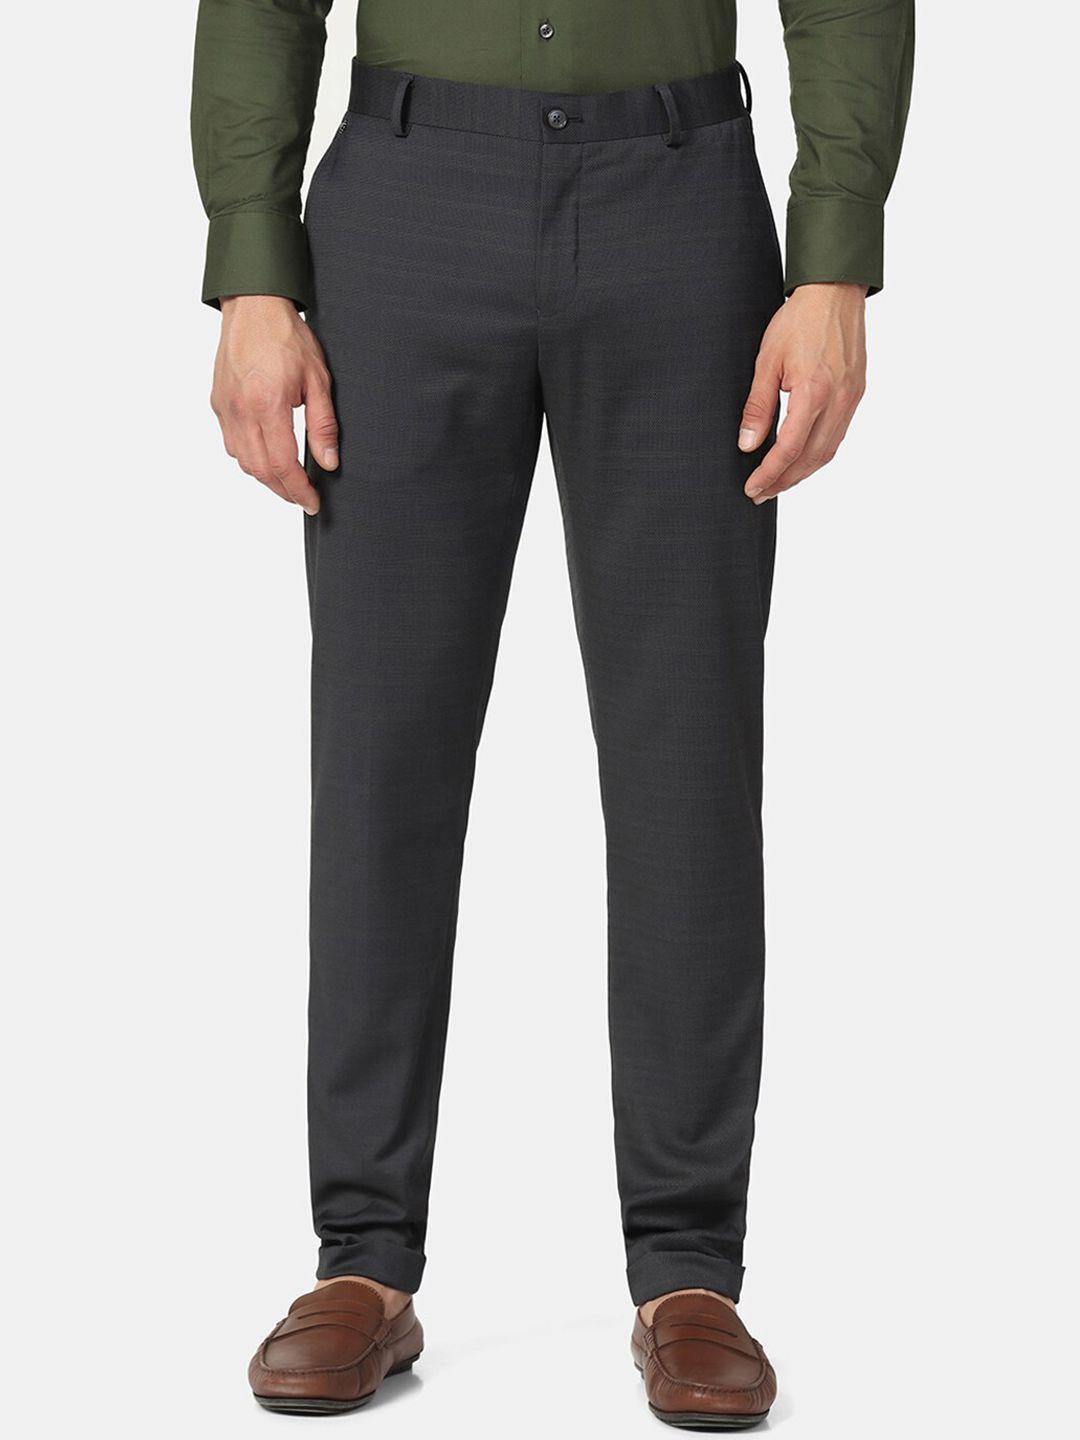 blackberrys-men-skinny-fit-low-rise-formal-trousers